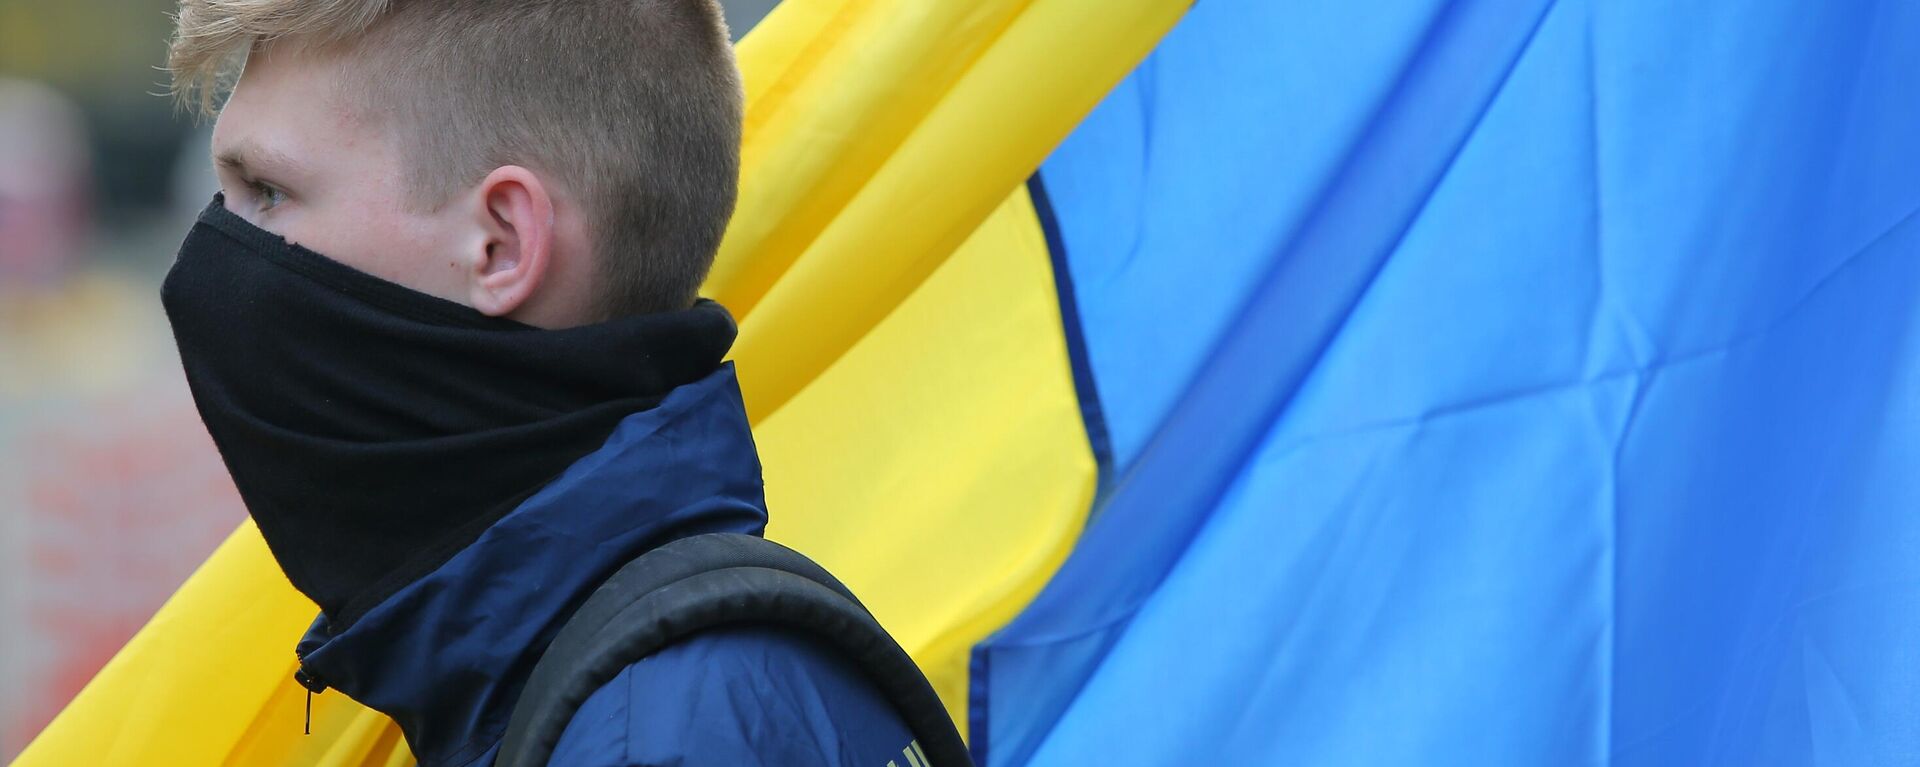 Молодой человек на фоне украинского флага - Sputnik Ўзбекистон, 1920, 25.08.2021